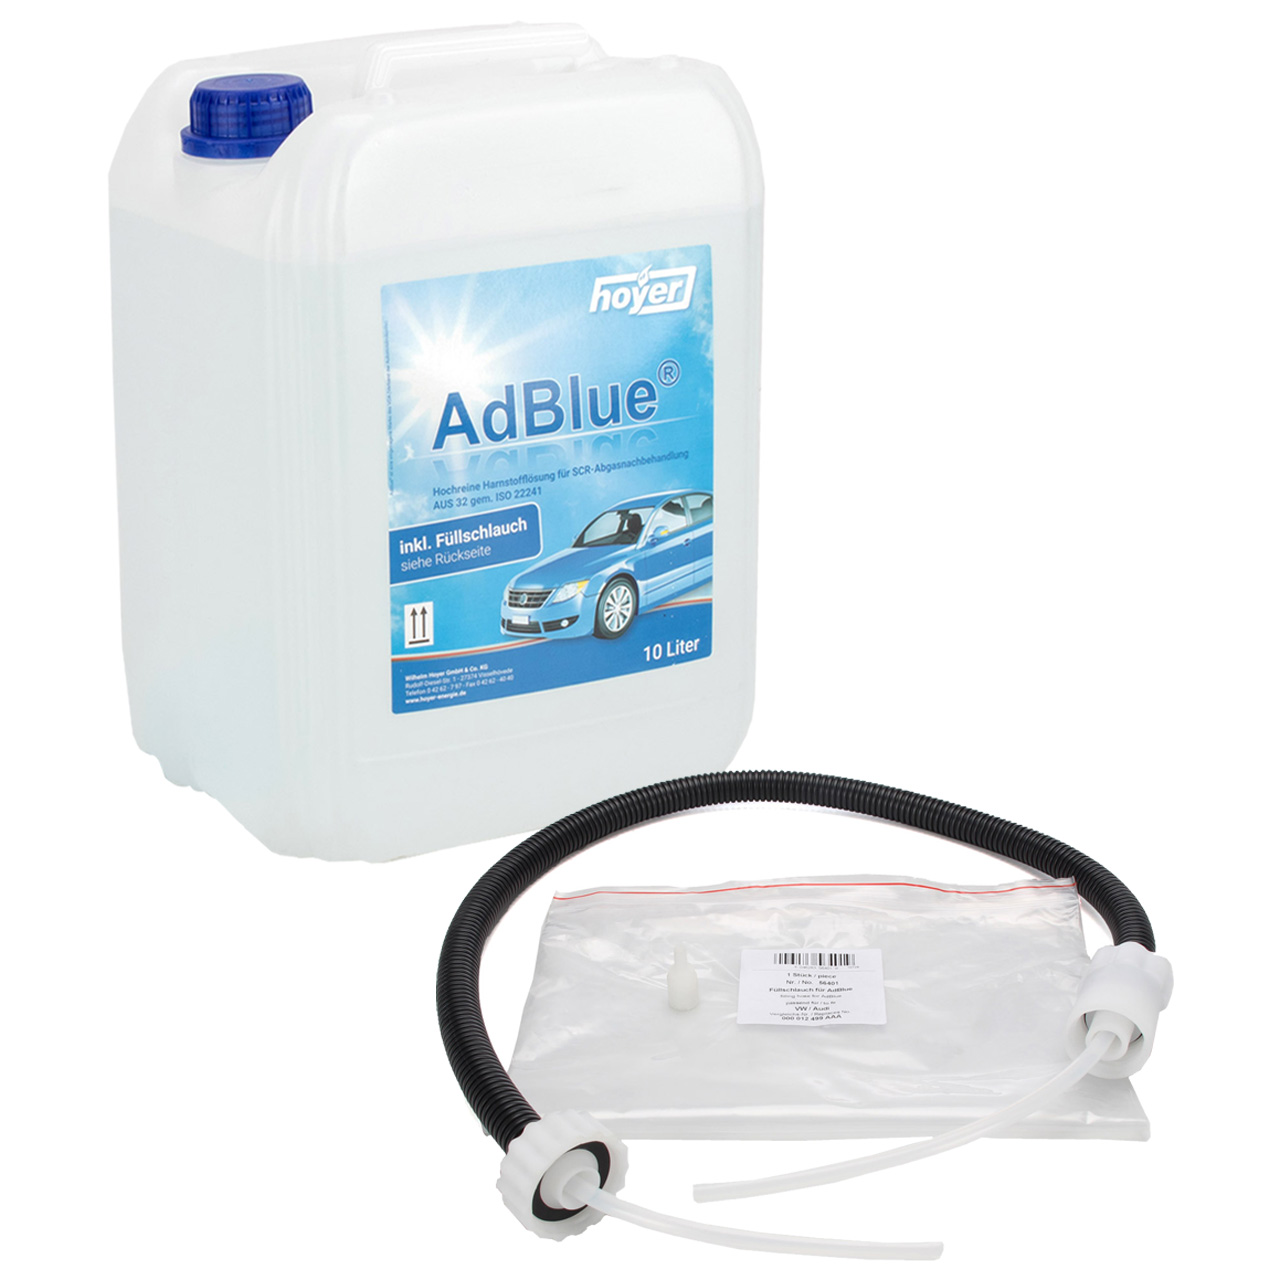 AdBlue® 10 liter, ISO 22241